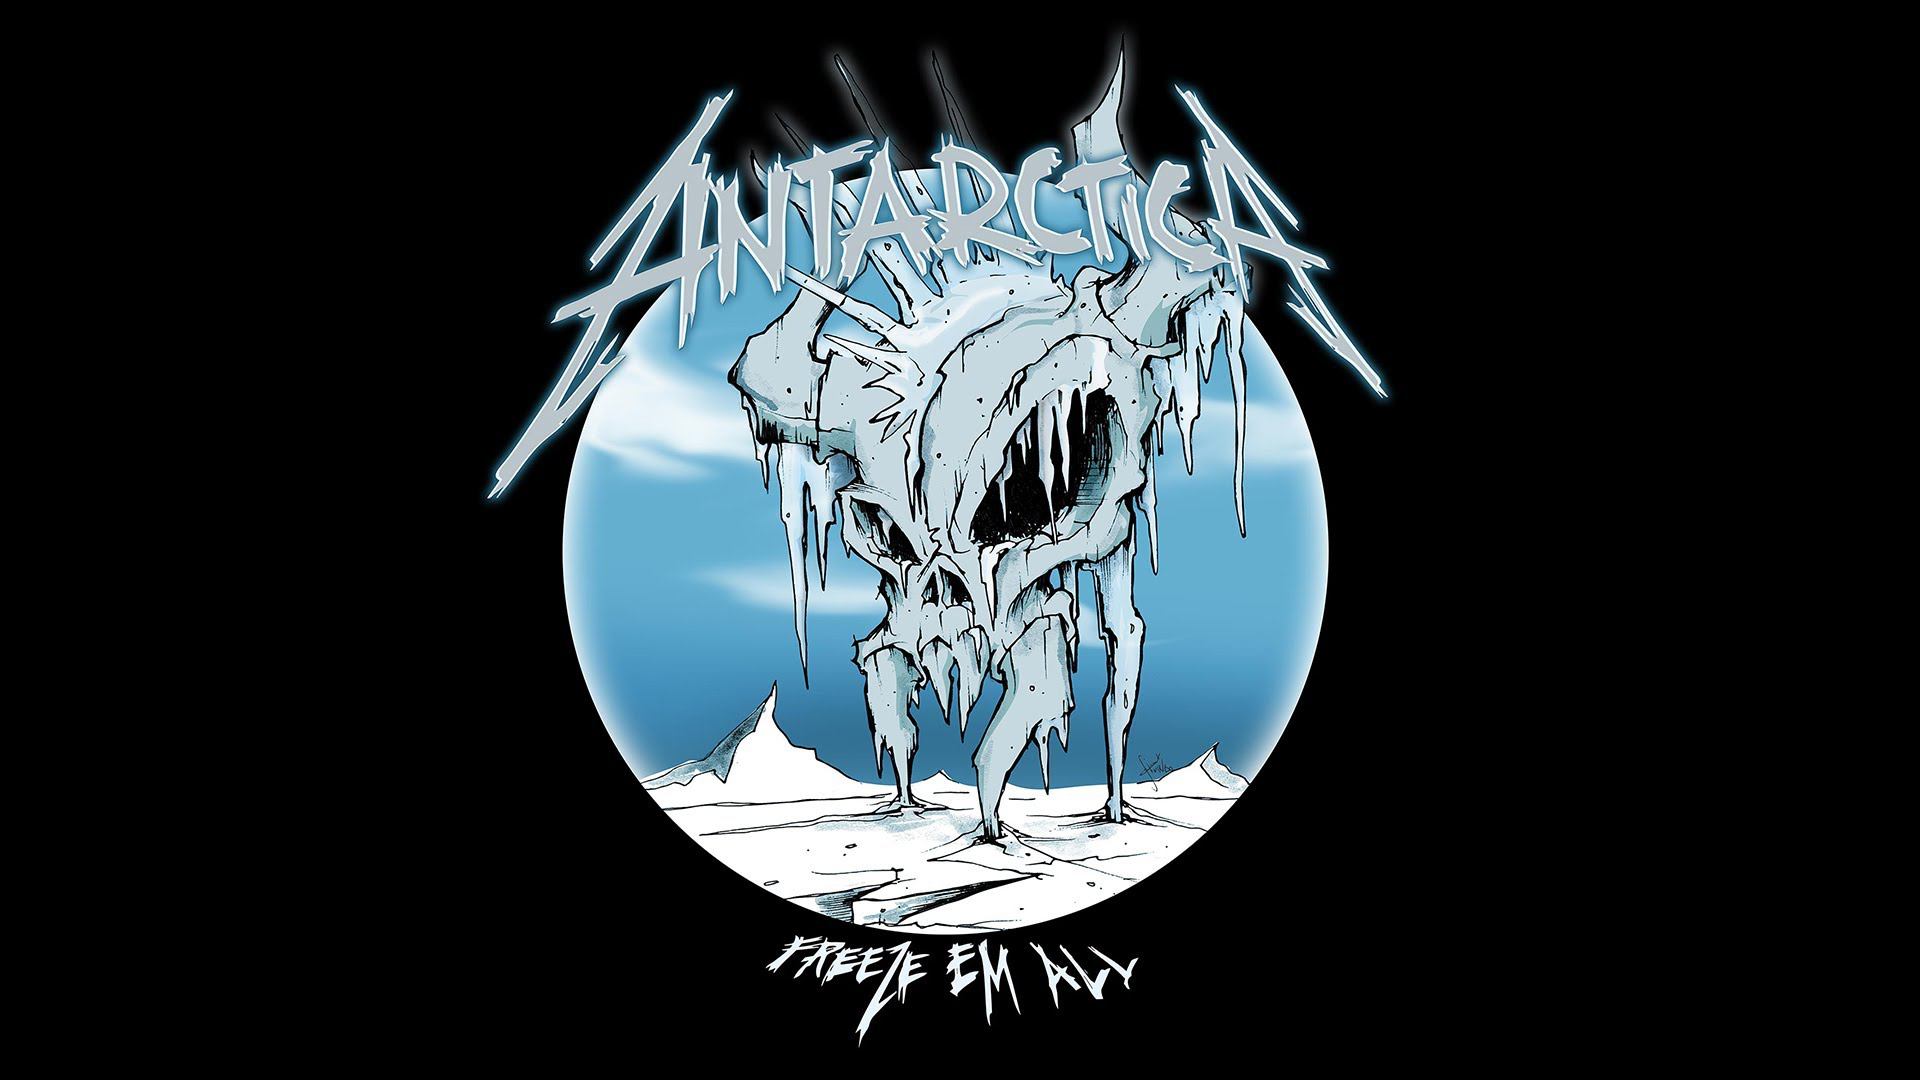 Metallica Antarctica Freeze em all